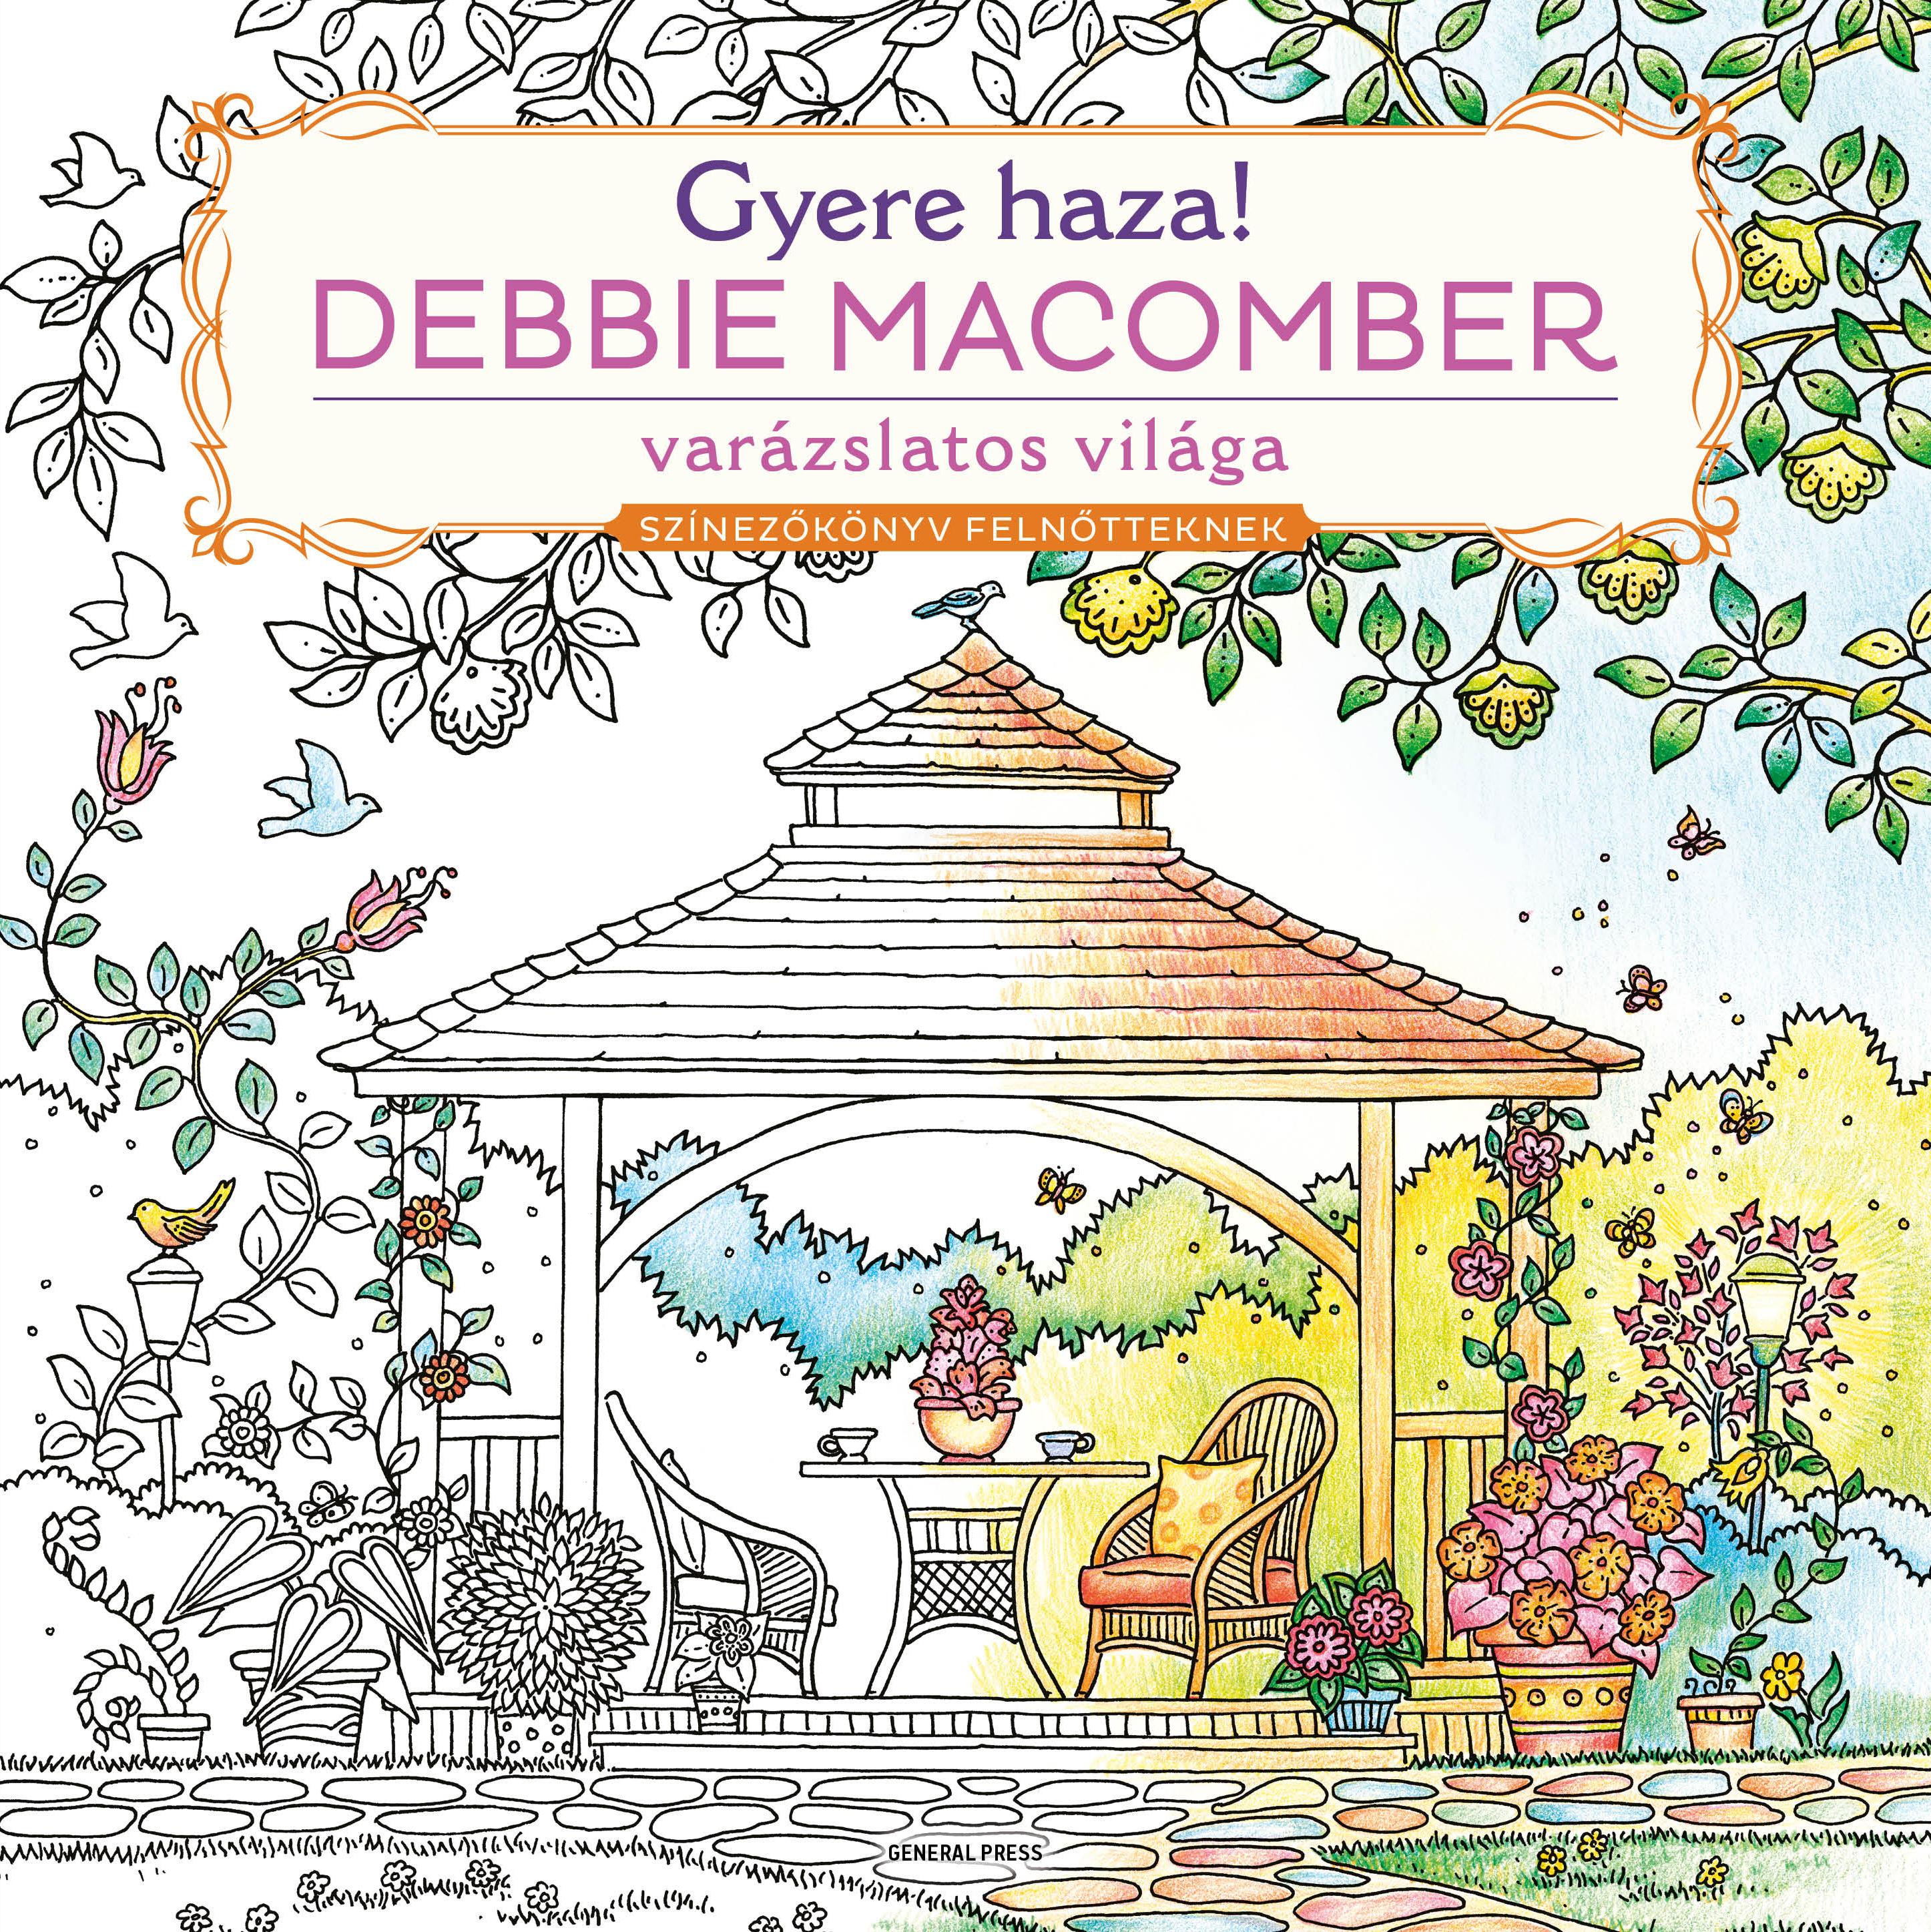 Debbie Macomber - Gyere haza! - Színezőkönyv felnőtteknek